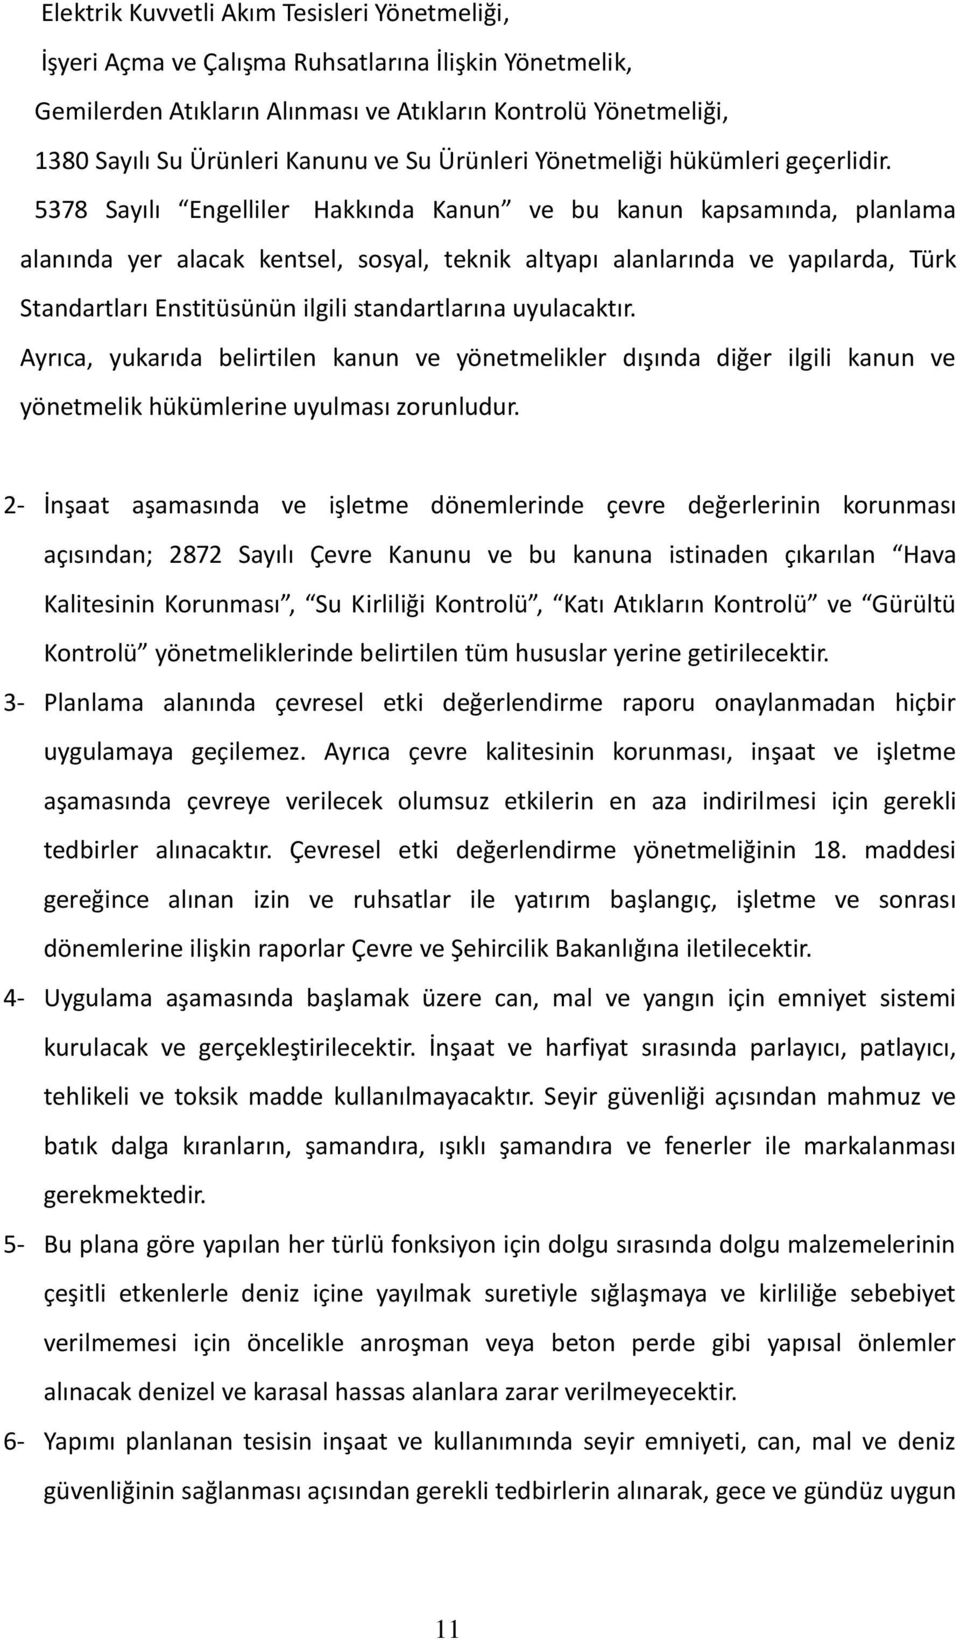 5378 Sayılı Engelliler Hakkında Kanun ve bu kanun kapsamında, planlama alanında yer alacak kentsel, sosyal, teknik altyapı alanlarında ve yapılarda, Türk Standartları Enstitüsünün ilgili